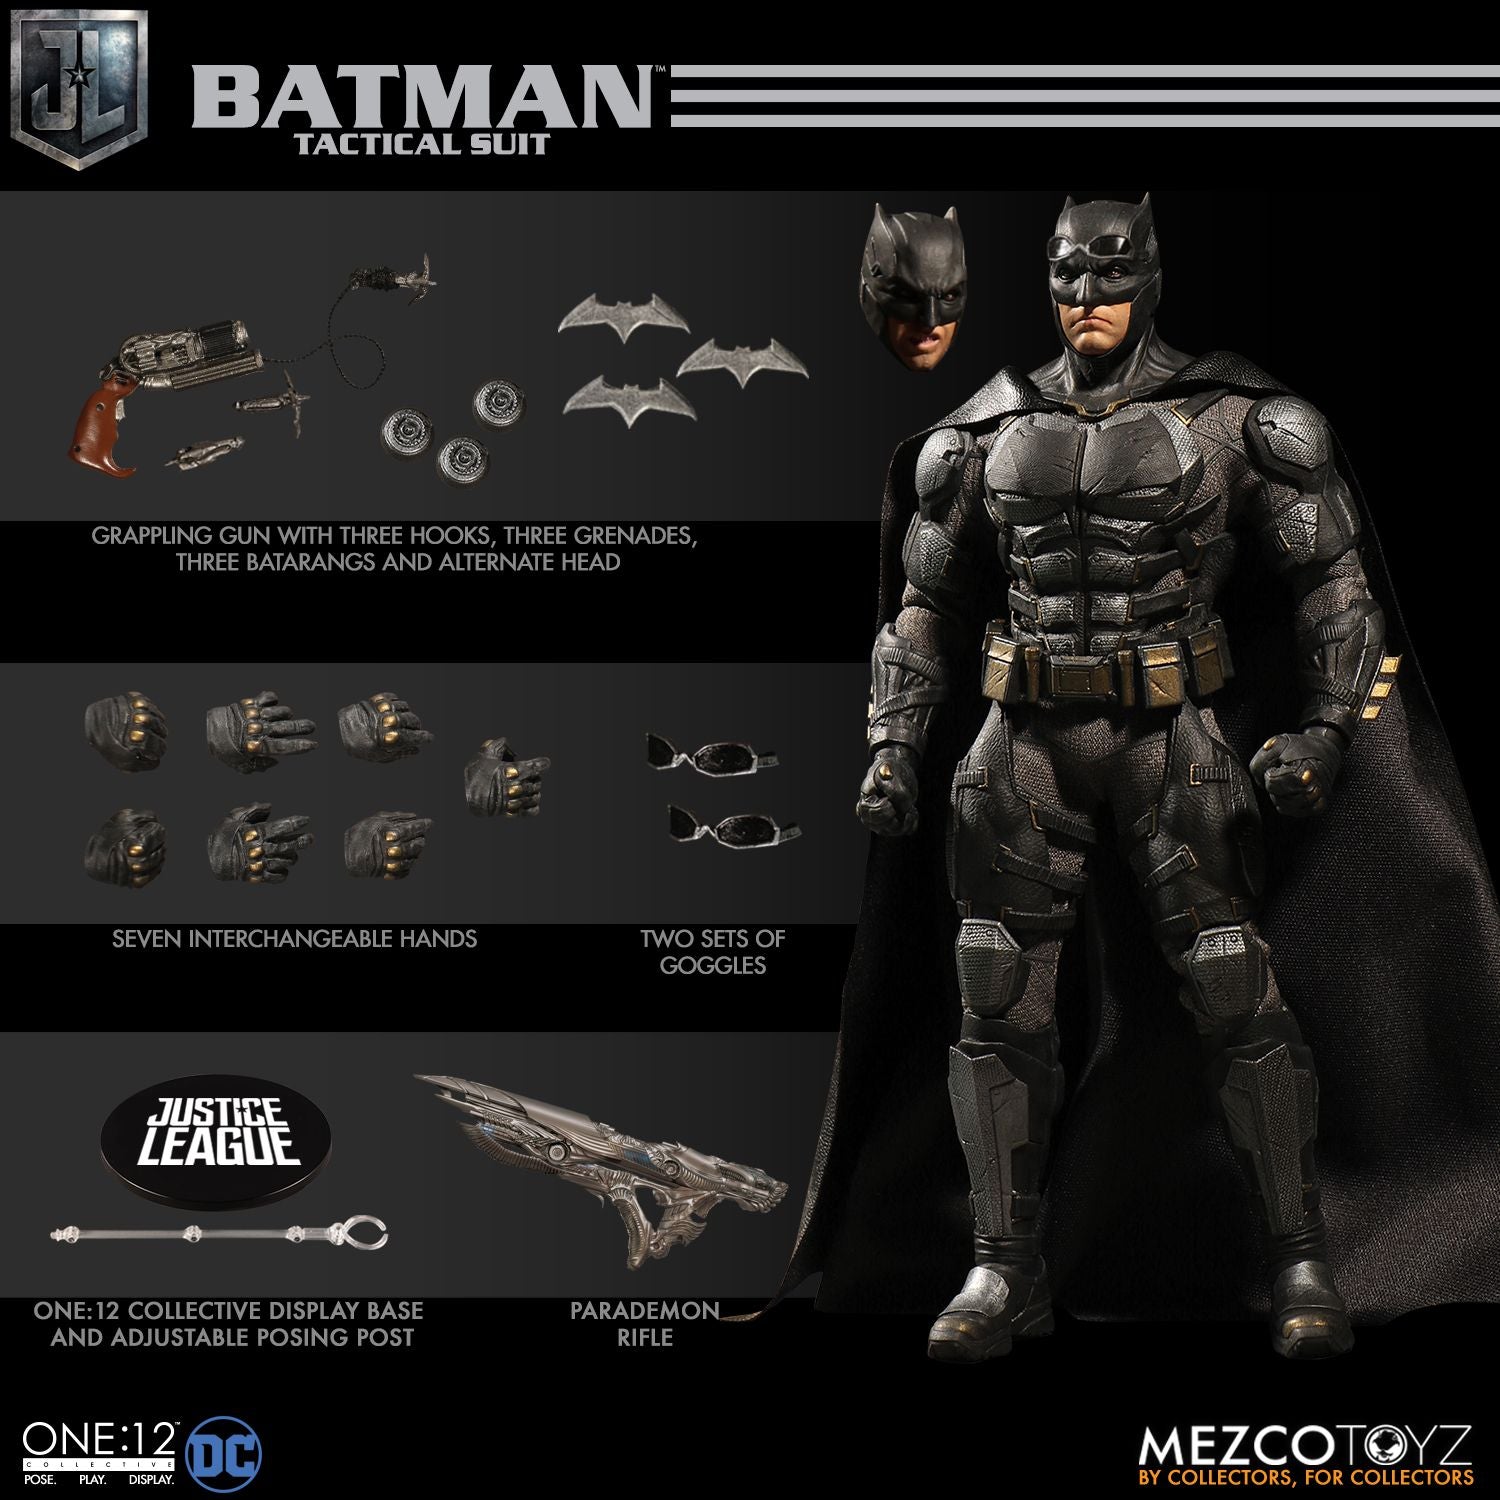 Mezco Toys One:12 Collective: DC Comics Justice League Batman Tactical Suite Action Figure 1